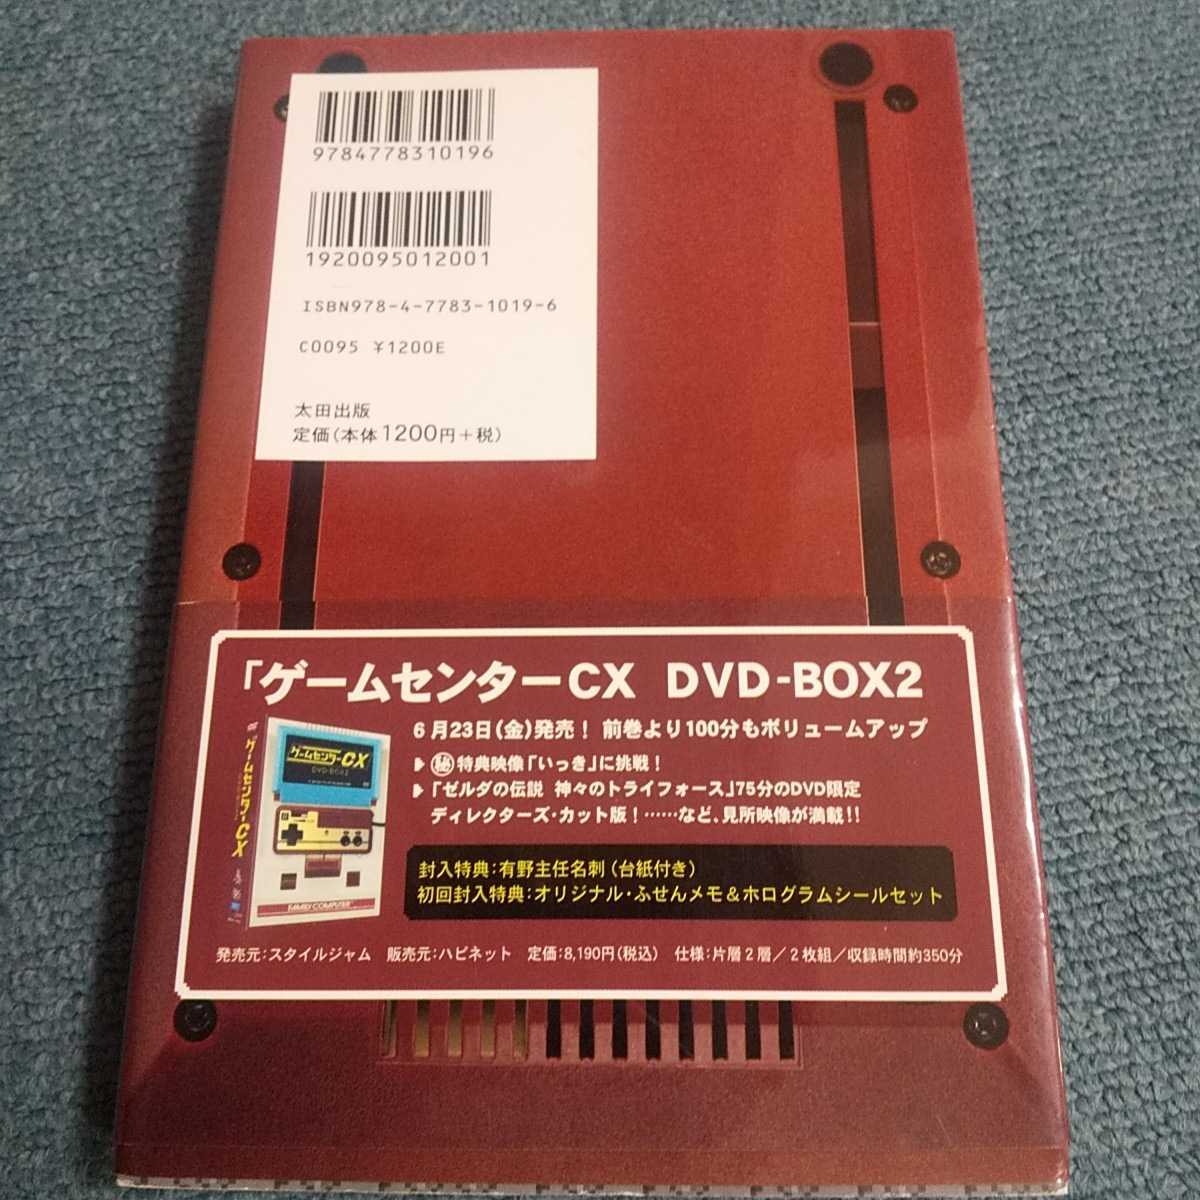  игра центральный CXкнига@ старая книга Famicom retro игра иметь .... nintendo Sega 